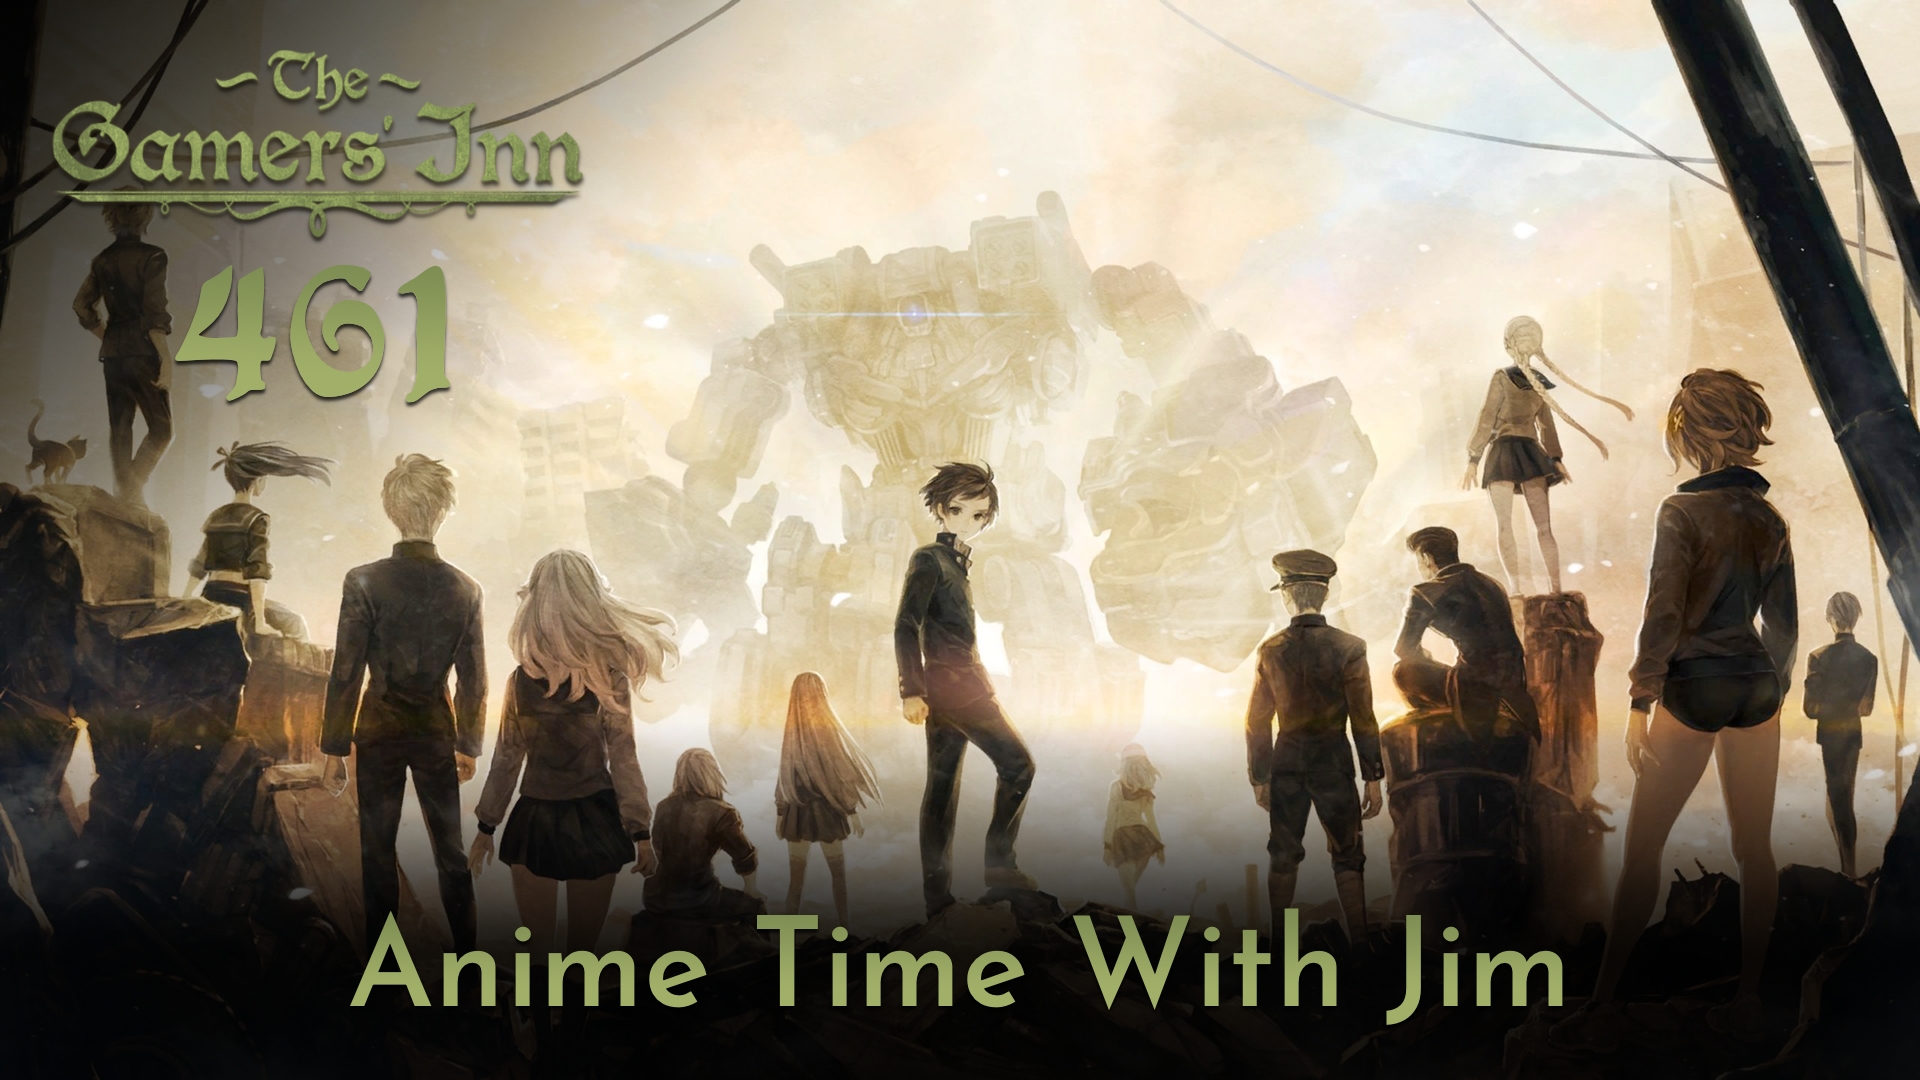 TGI 461 - Anime Time With Jim